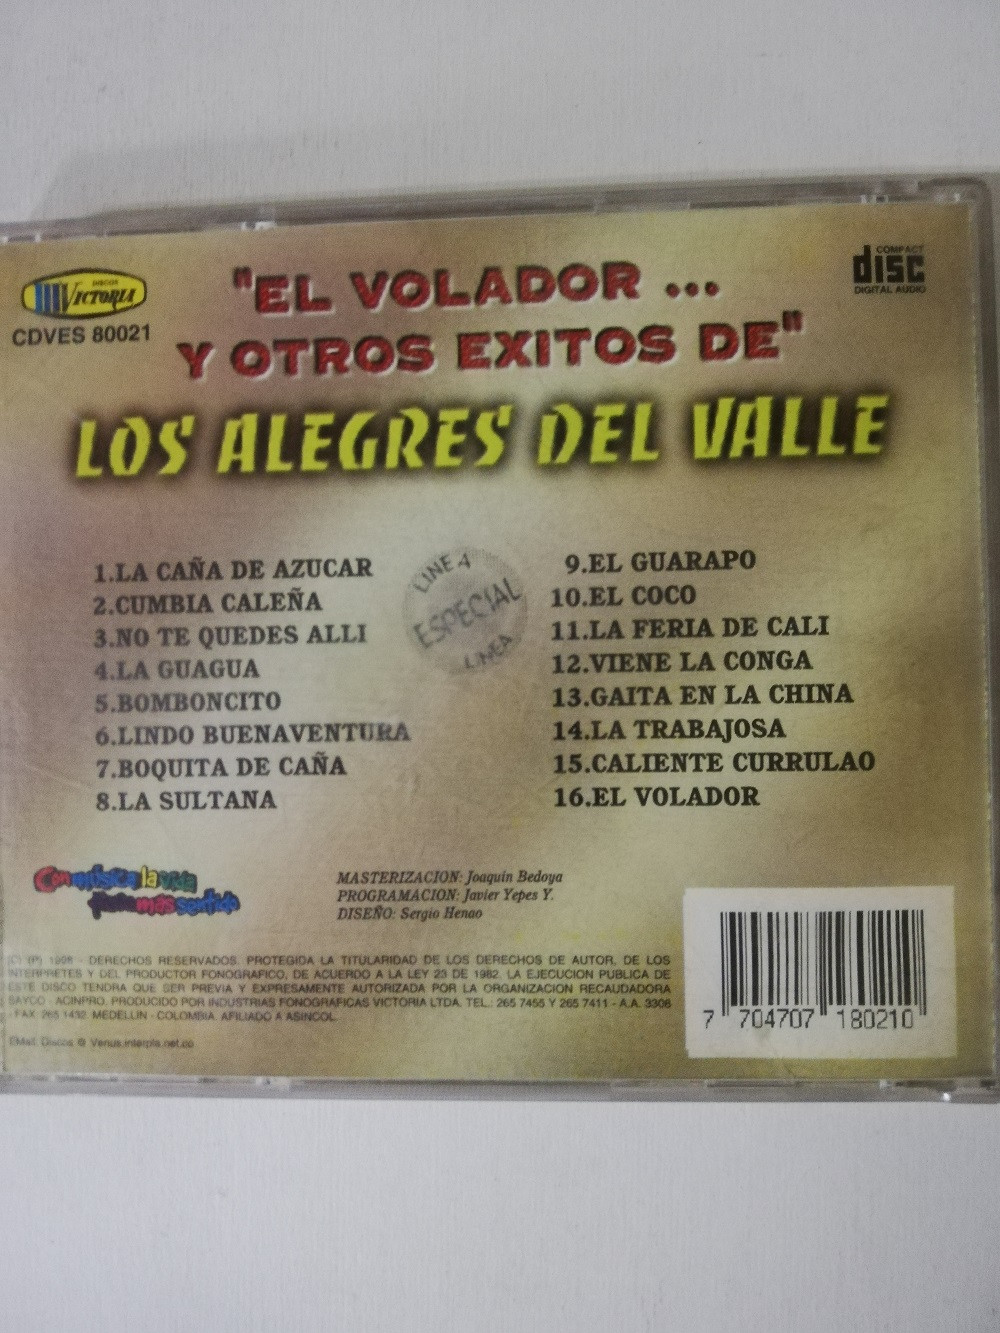 Imagen CD LOS ALEGRES DEL VALLE - EL VOLADOR Y OTROS EXITOS 2